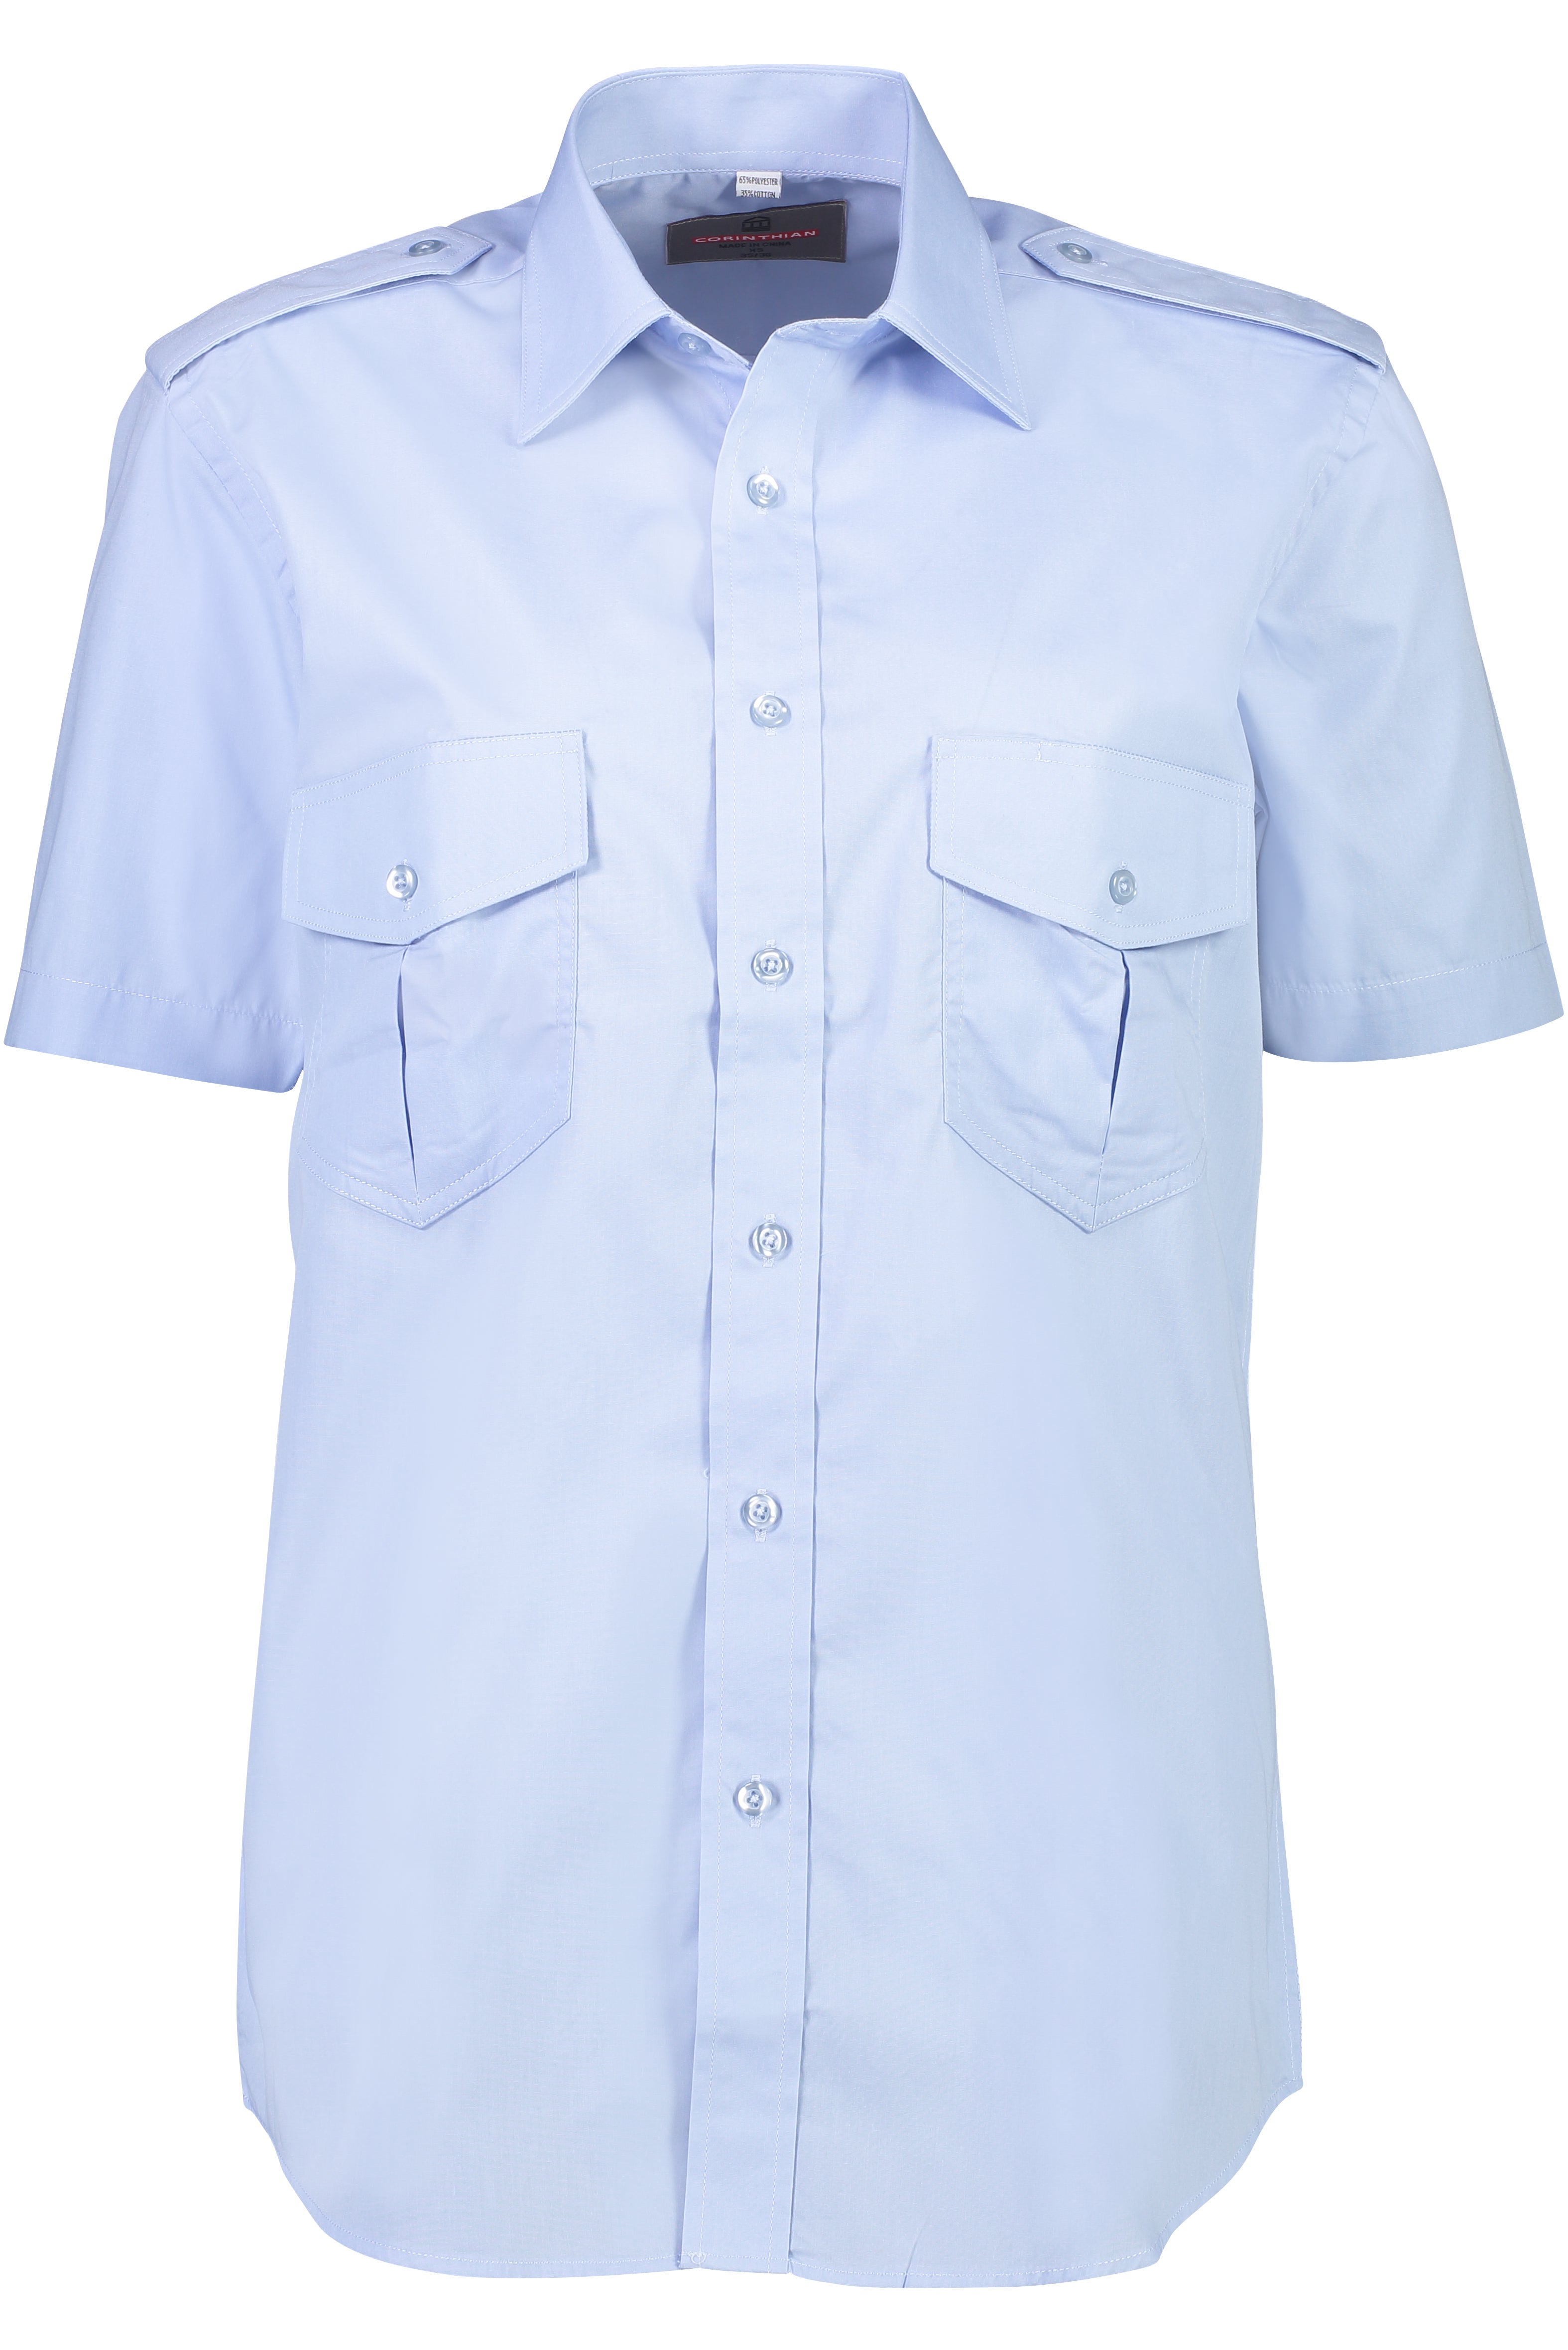 Men's Short Sleeve Epaulette Shirt